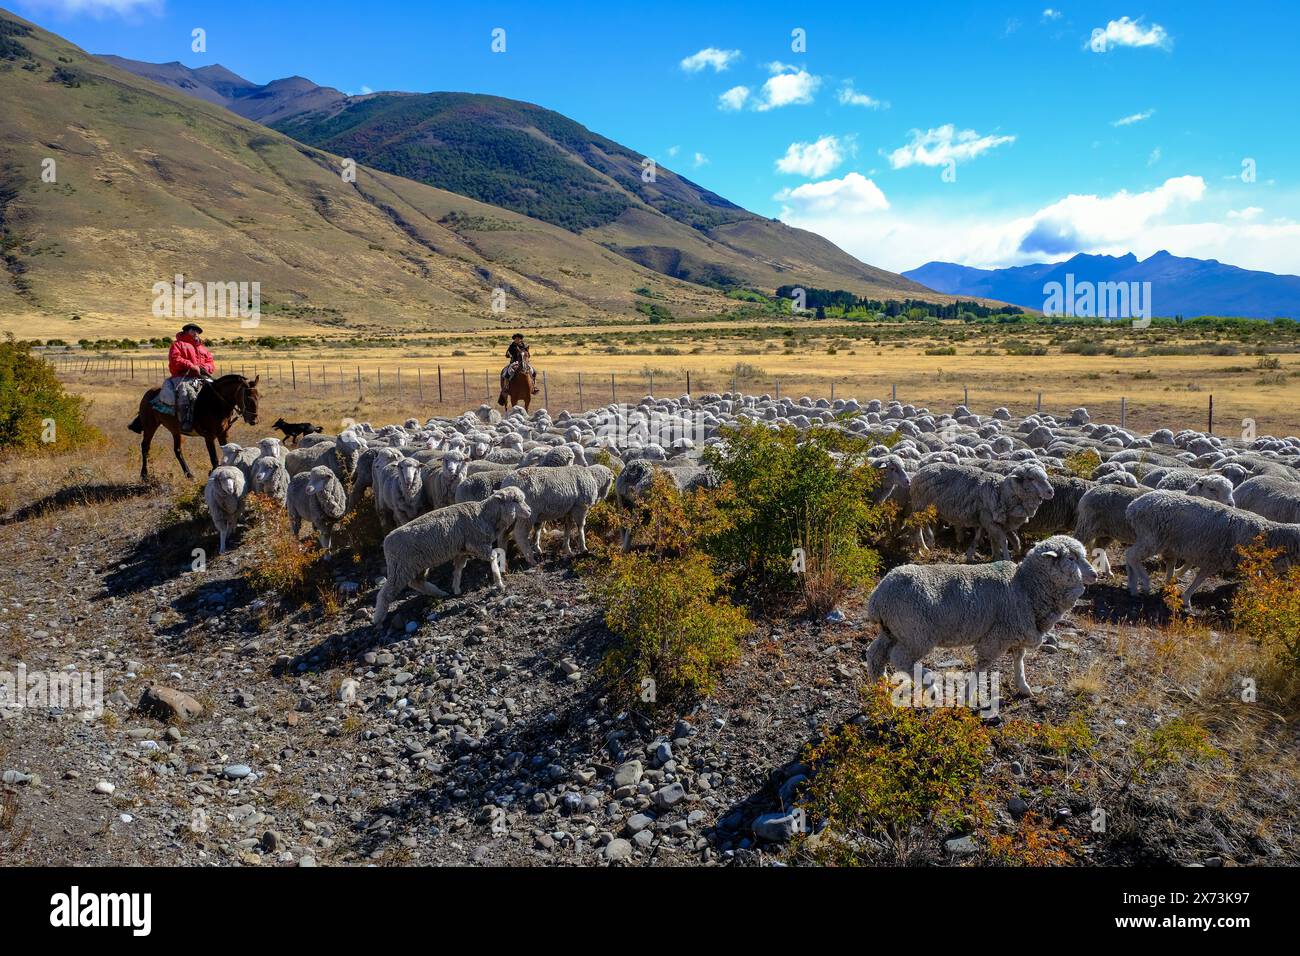 El Calafate, Patagonien, Argentinien - Gauchos zu Pferd fahren eine Schafherde durch die patagonische Pampas vor einer bergigen Landschaft, der Stockfoto